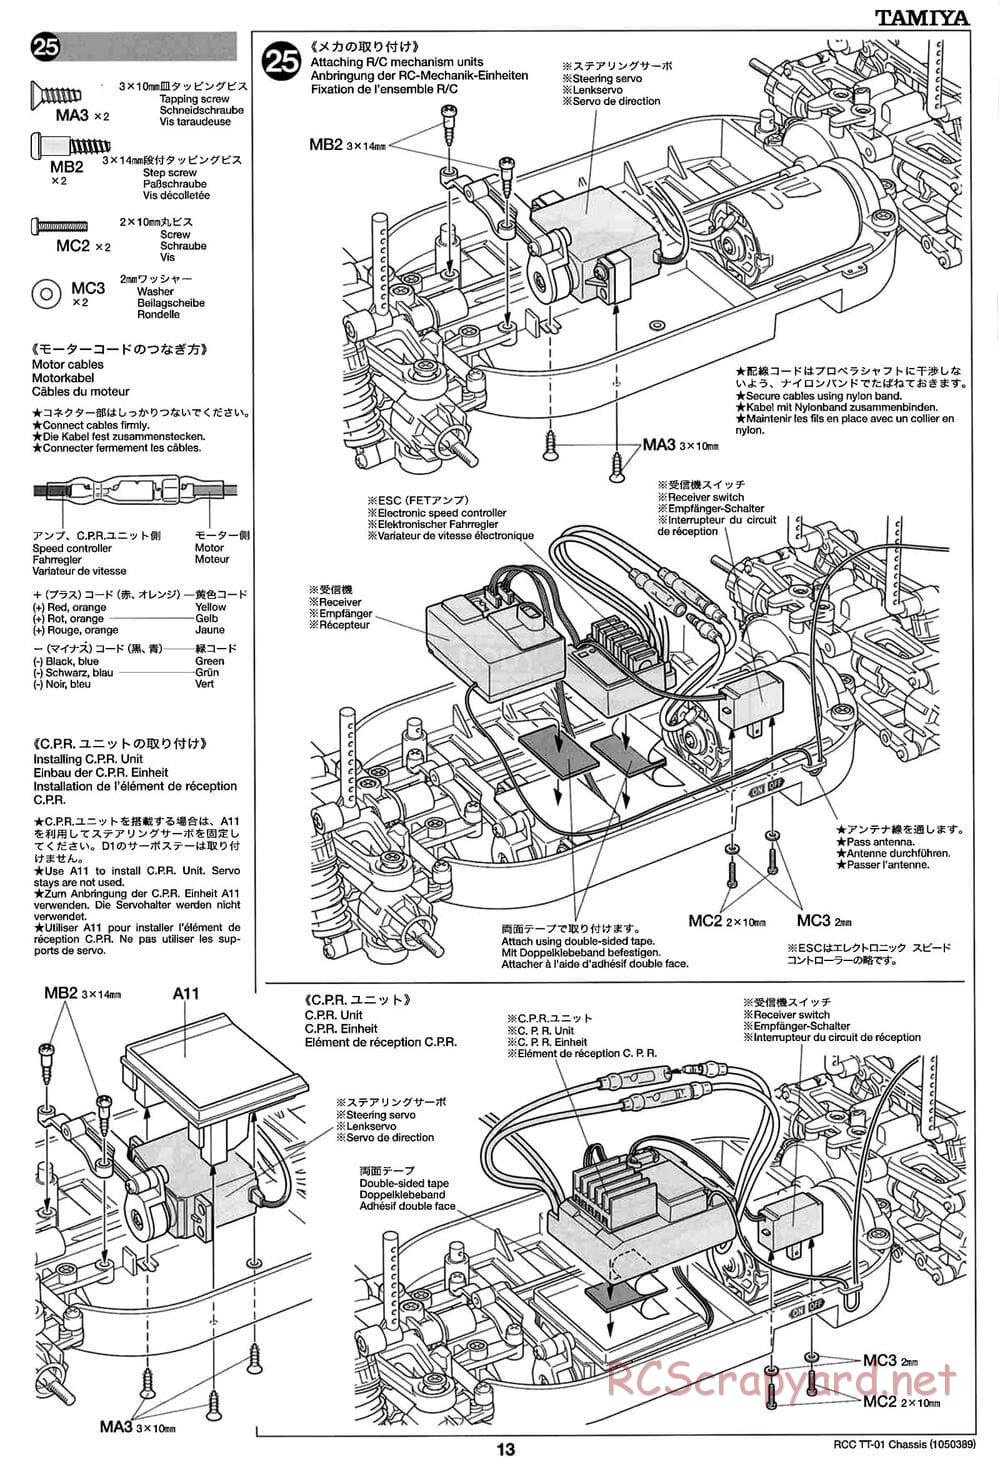 Tamiya - TT-01 Chassis - Manual - Page 13